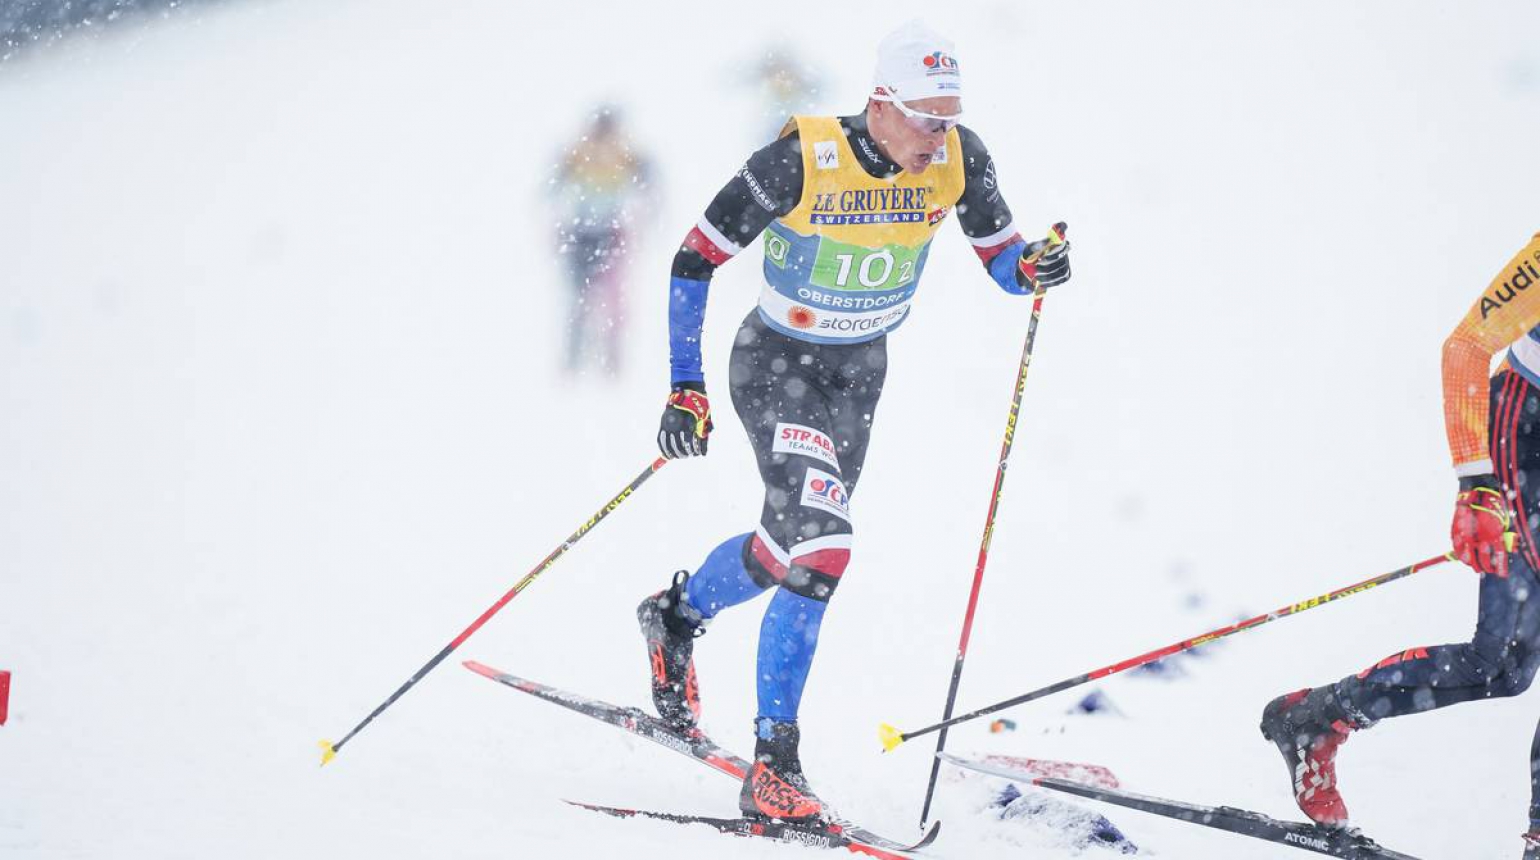 Mistrovství světa: Čeští běžci na lyžích byli ve štafetě jedenáctí. Zlato patří favorizovanému Norsku